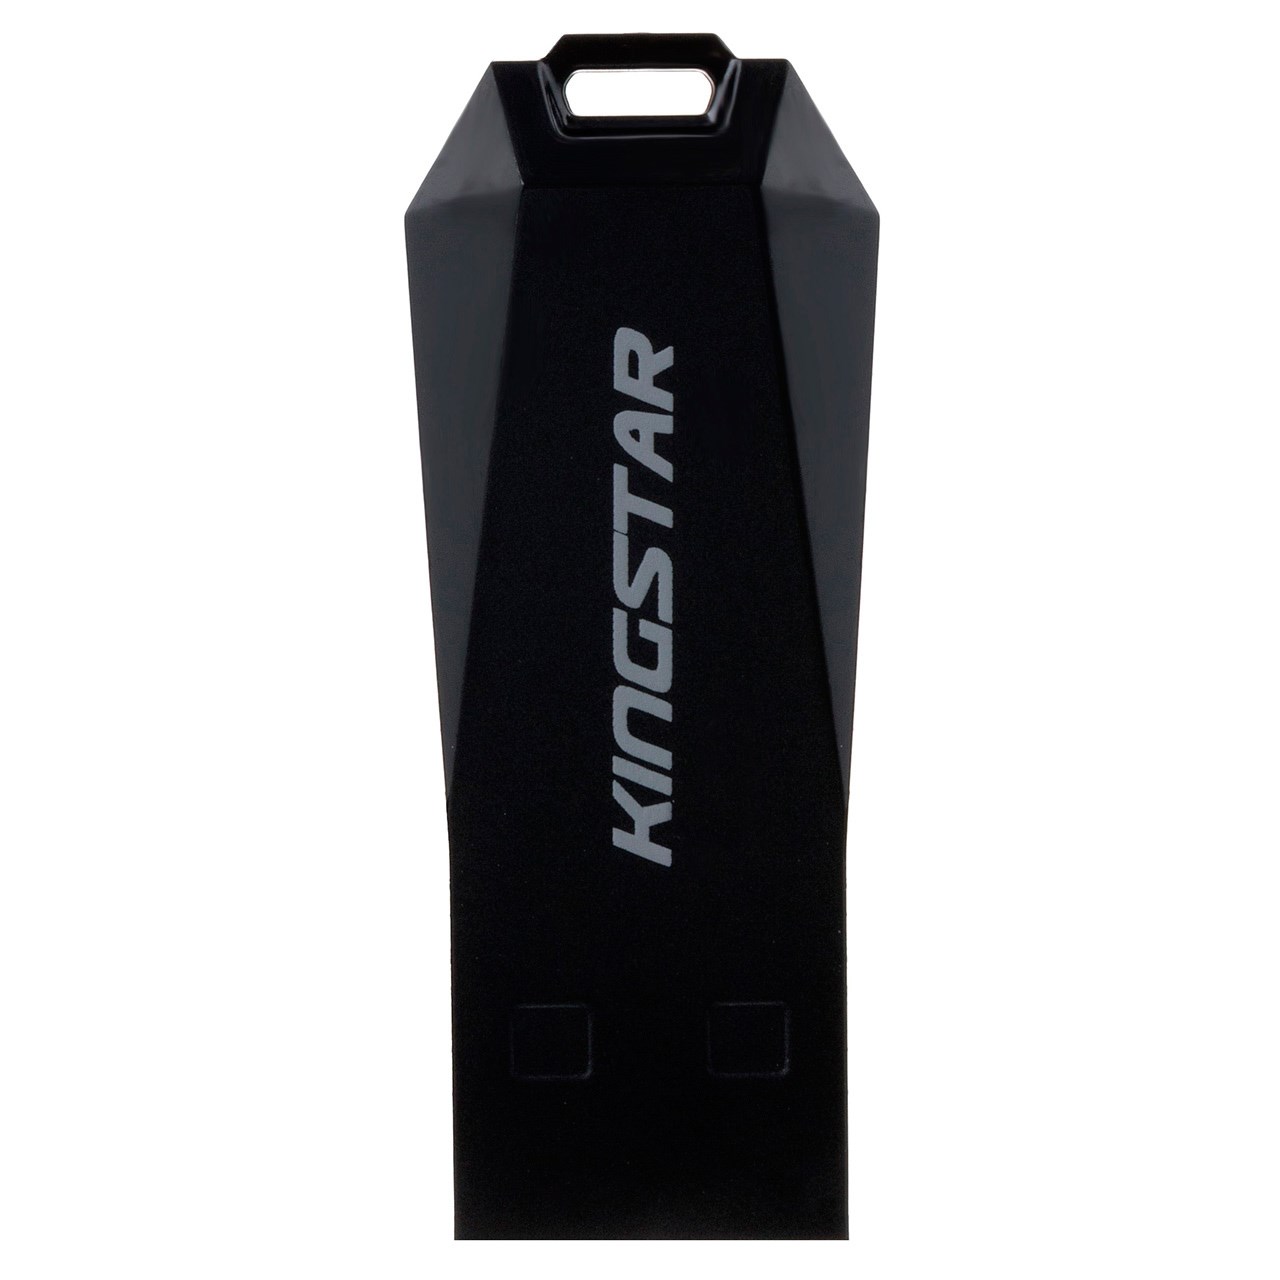 فلش مموری کینگ استار مدل Slider USB KS205 ظرفیت 32 گیگابایت